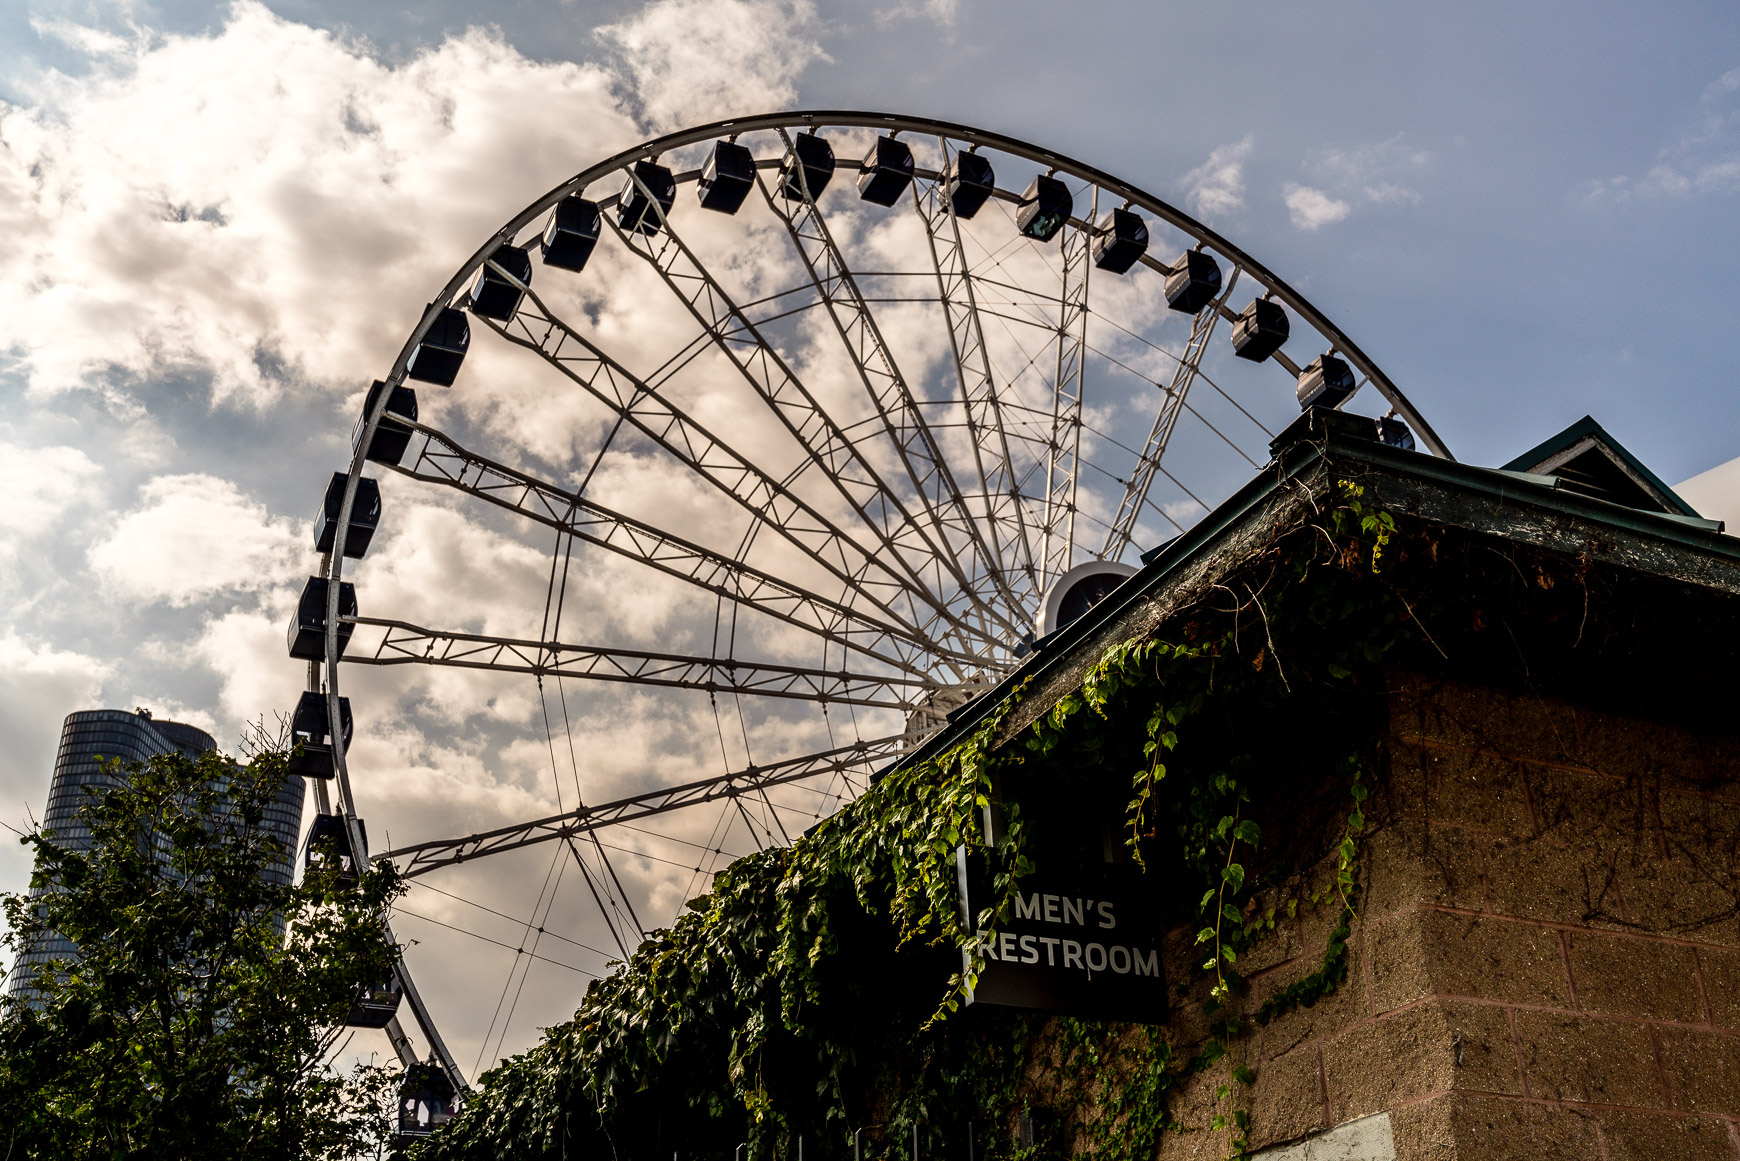 Centennial Wheel ferris wheel at Navy Pier Park in Chicago